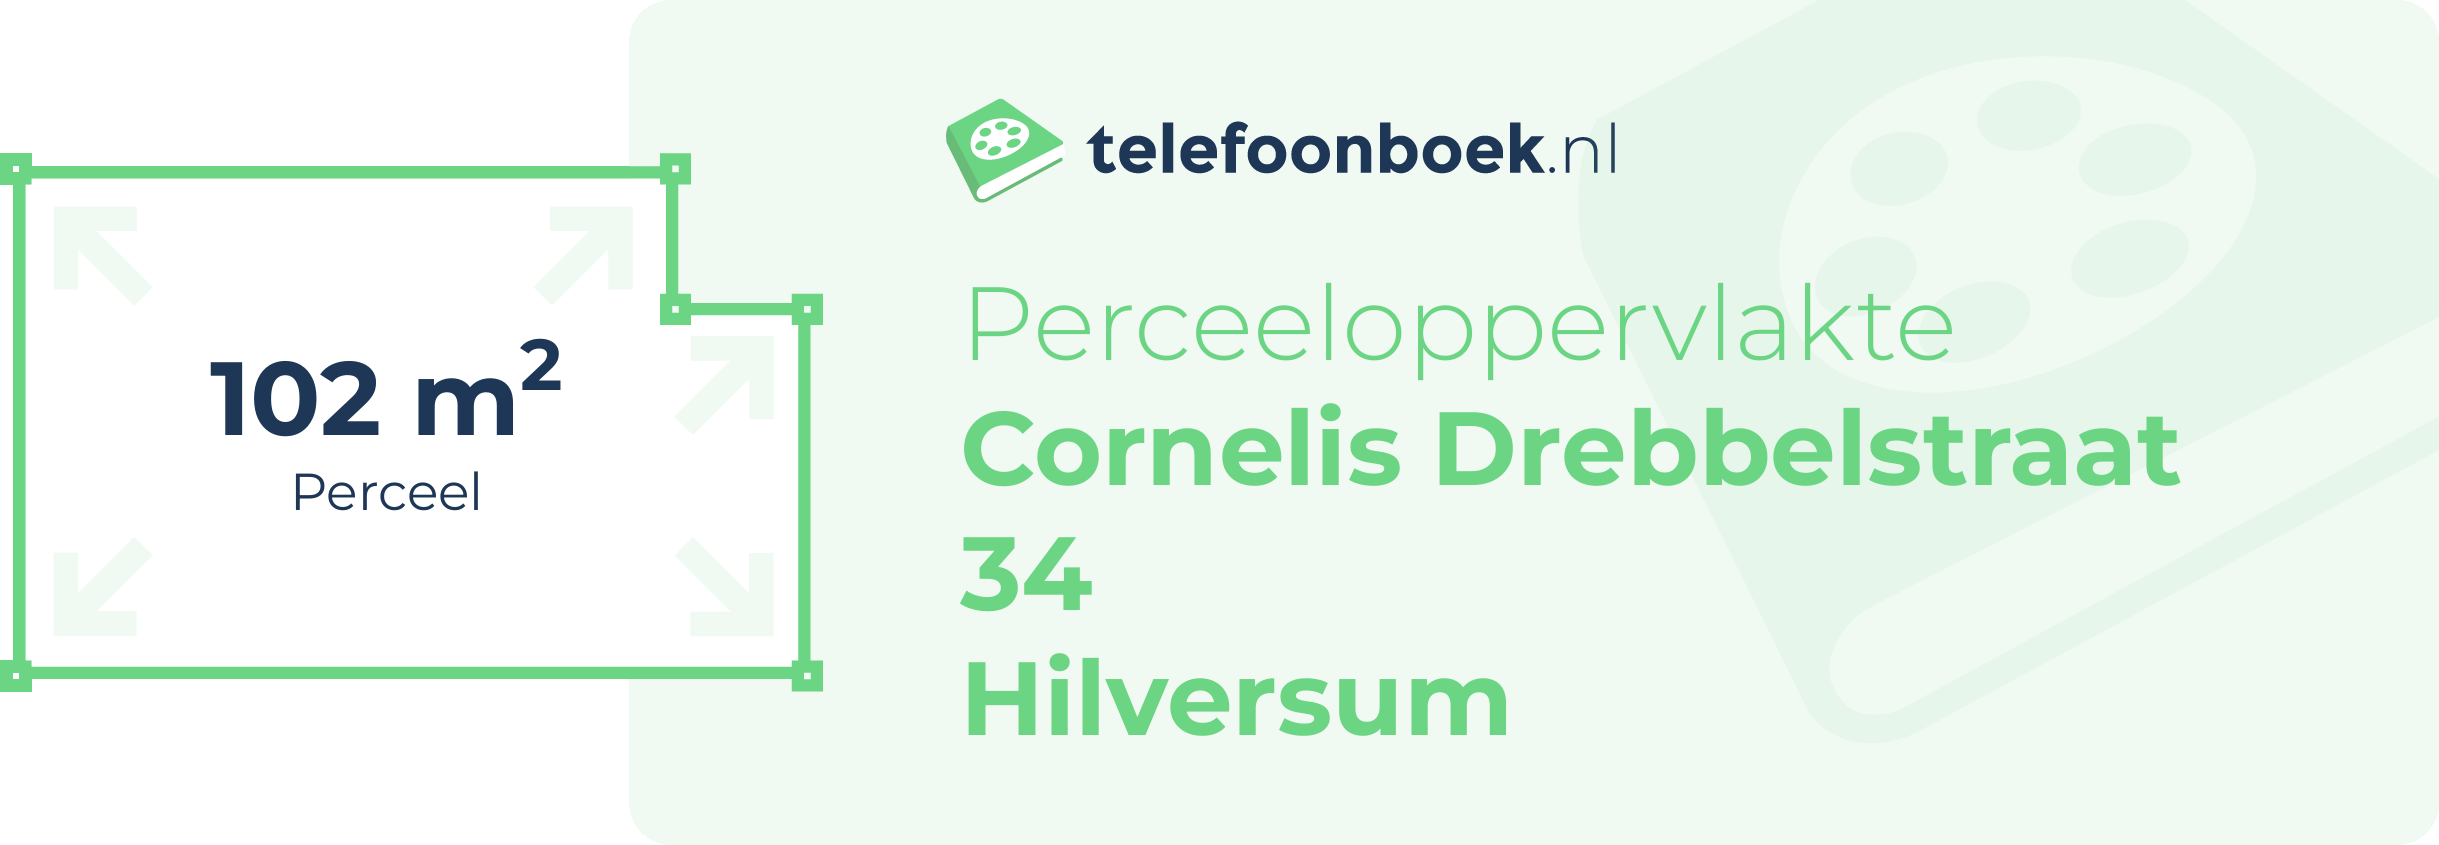 Perceeloppervlakte Cornelis Drebbelstraat 34 Hilversum